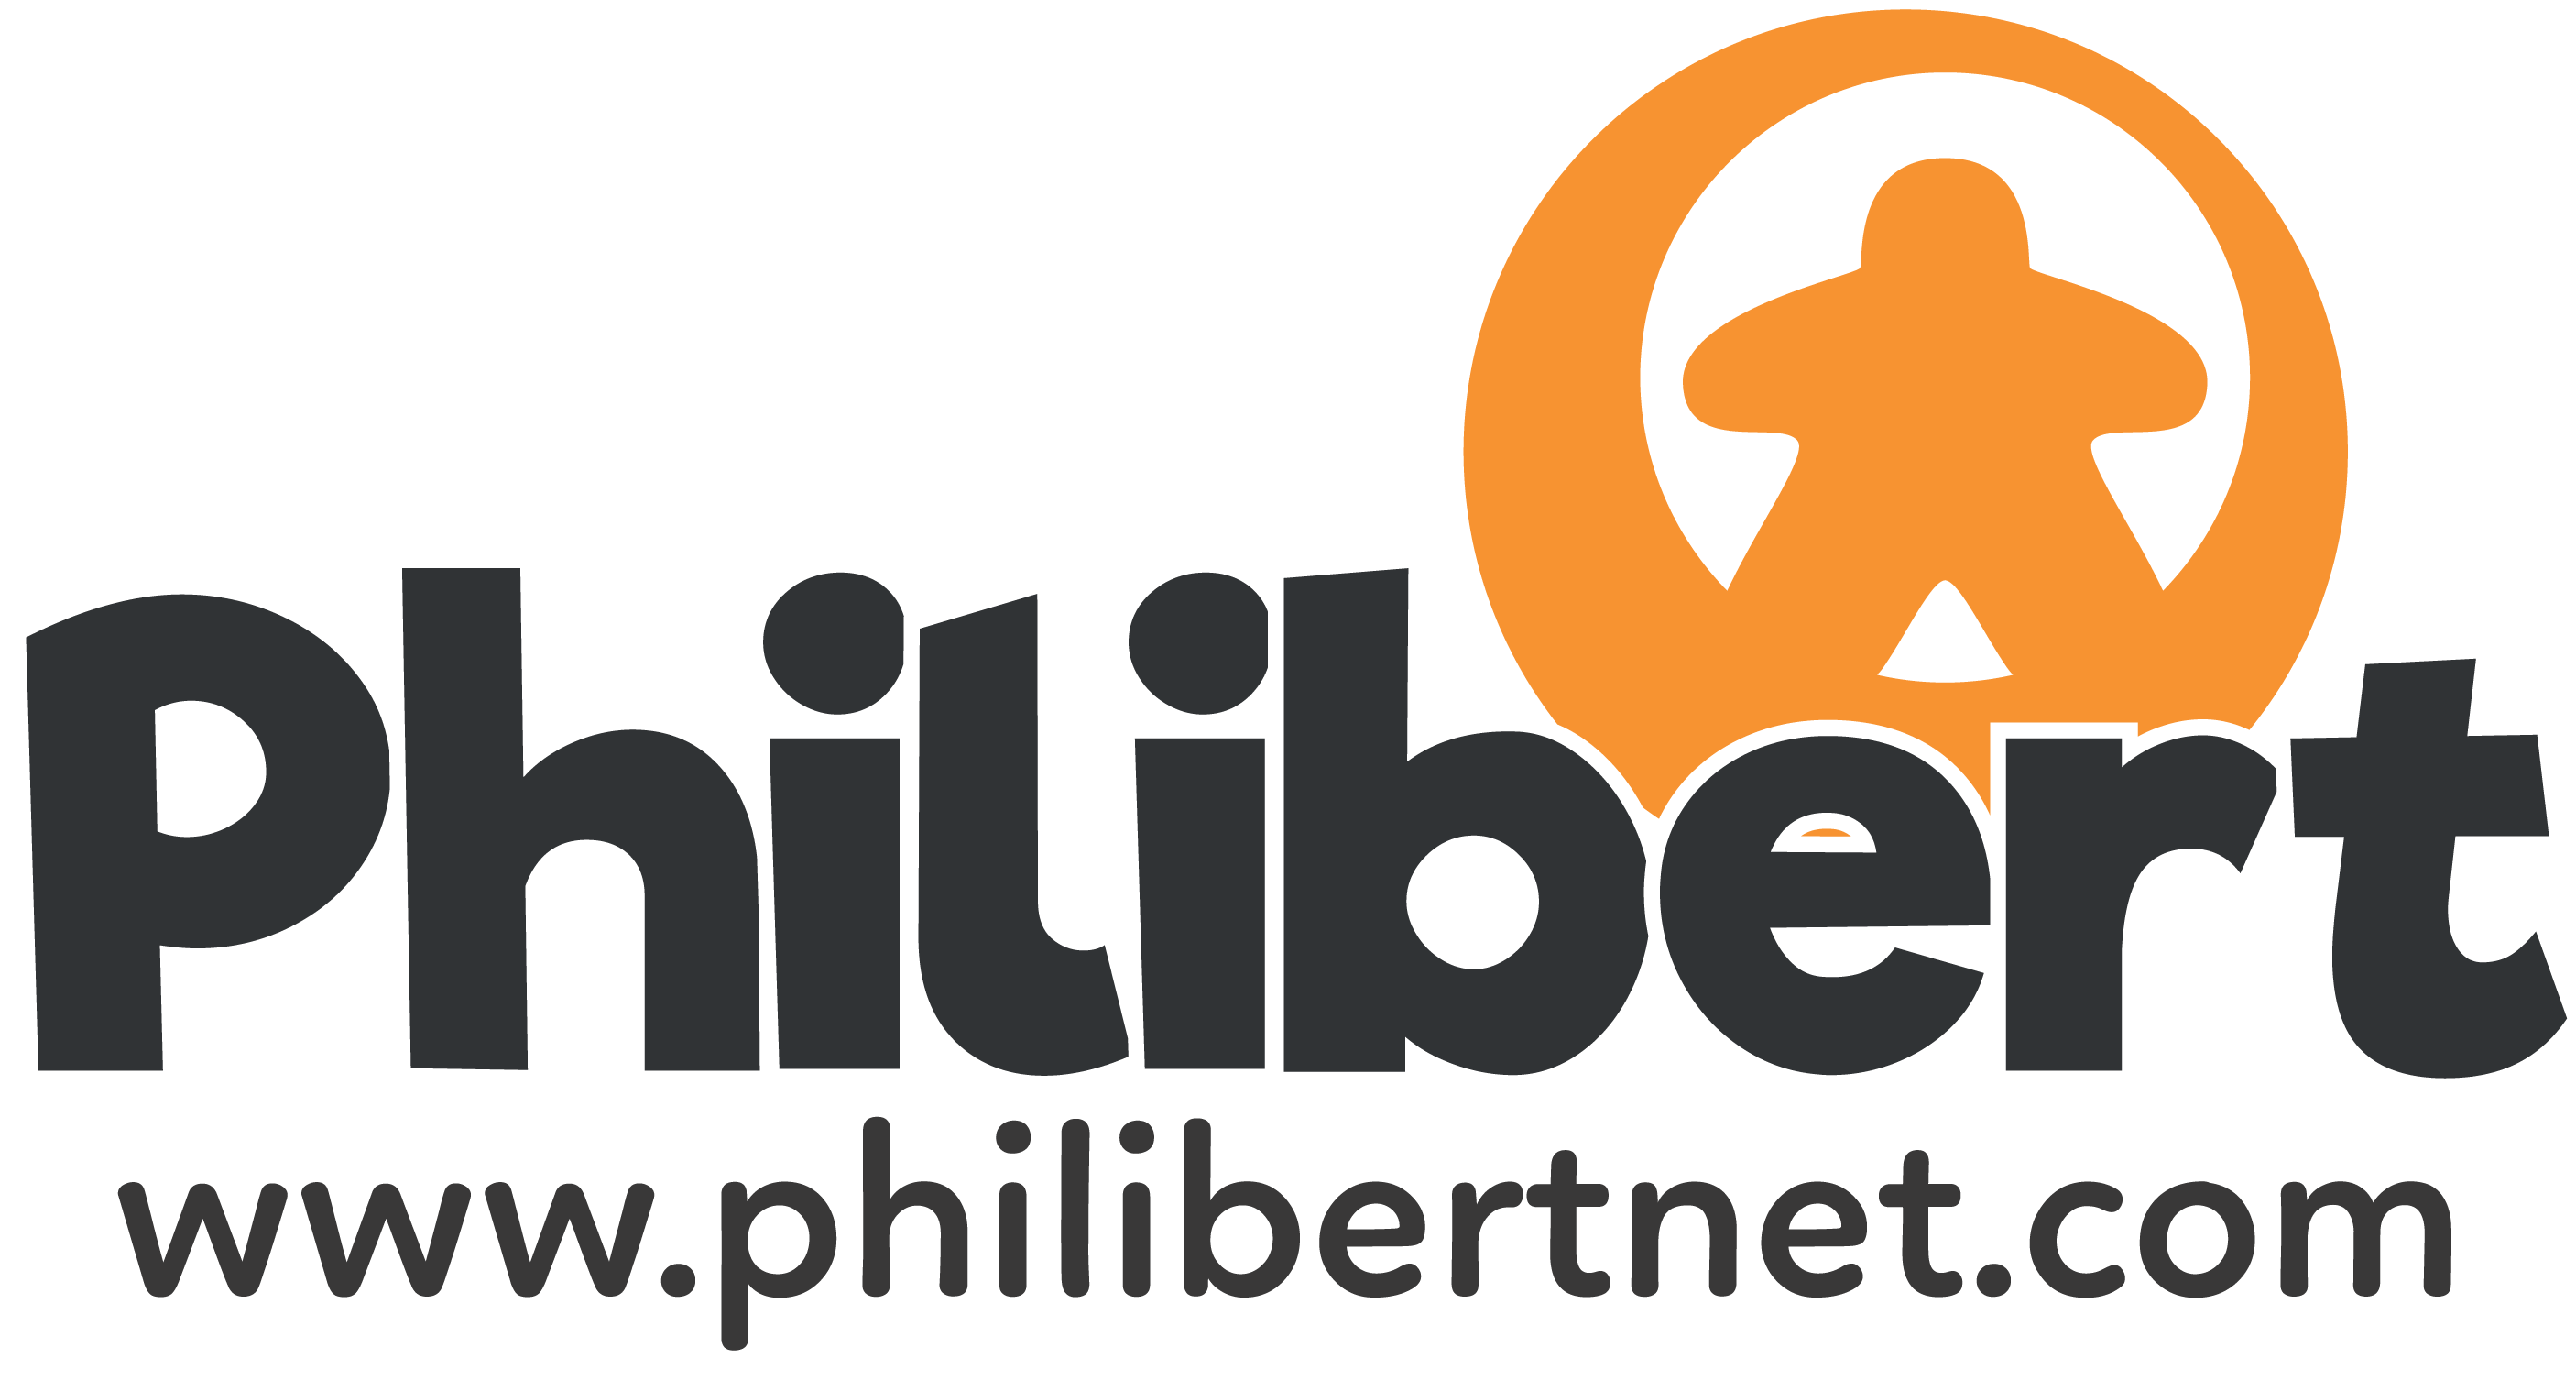 Boutique Philibert